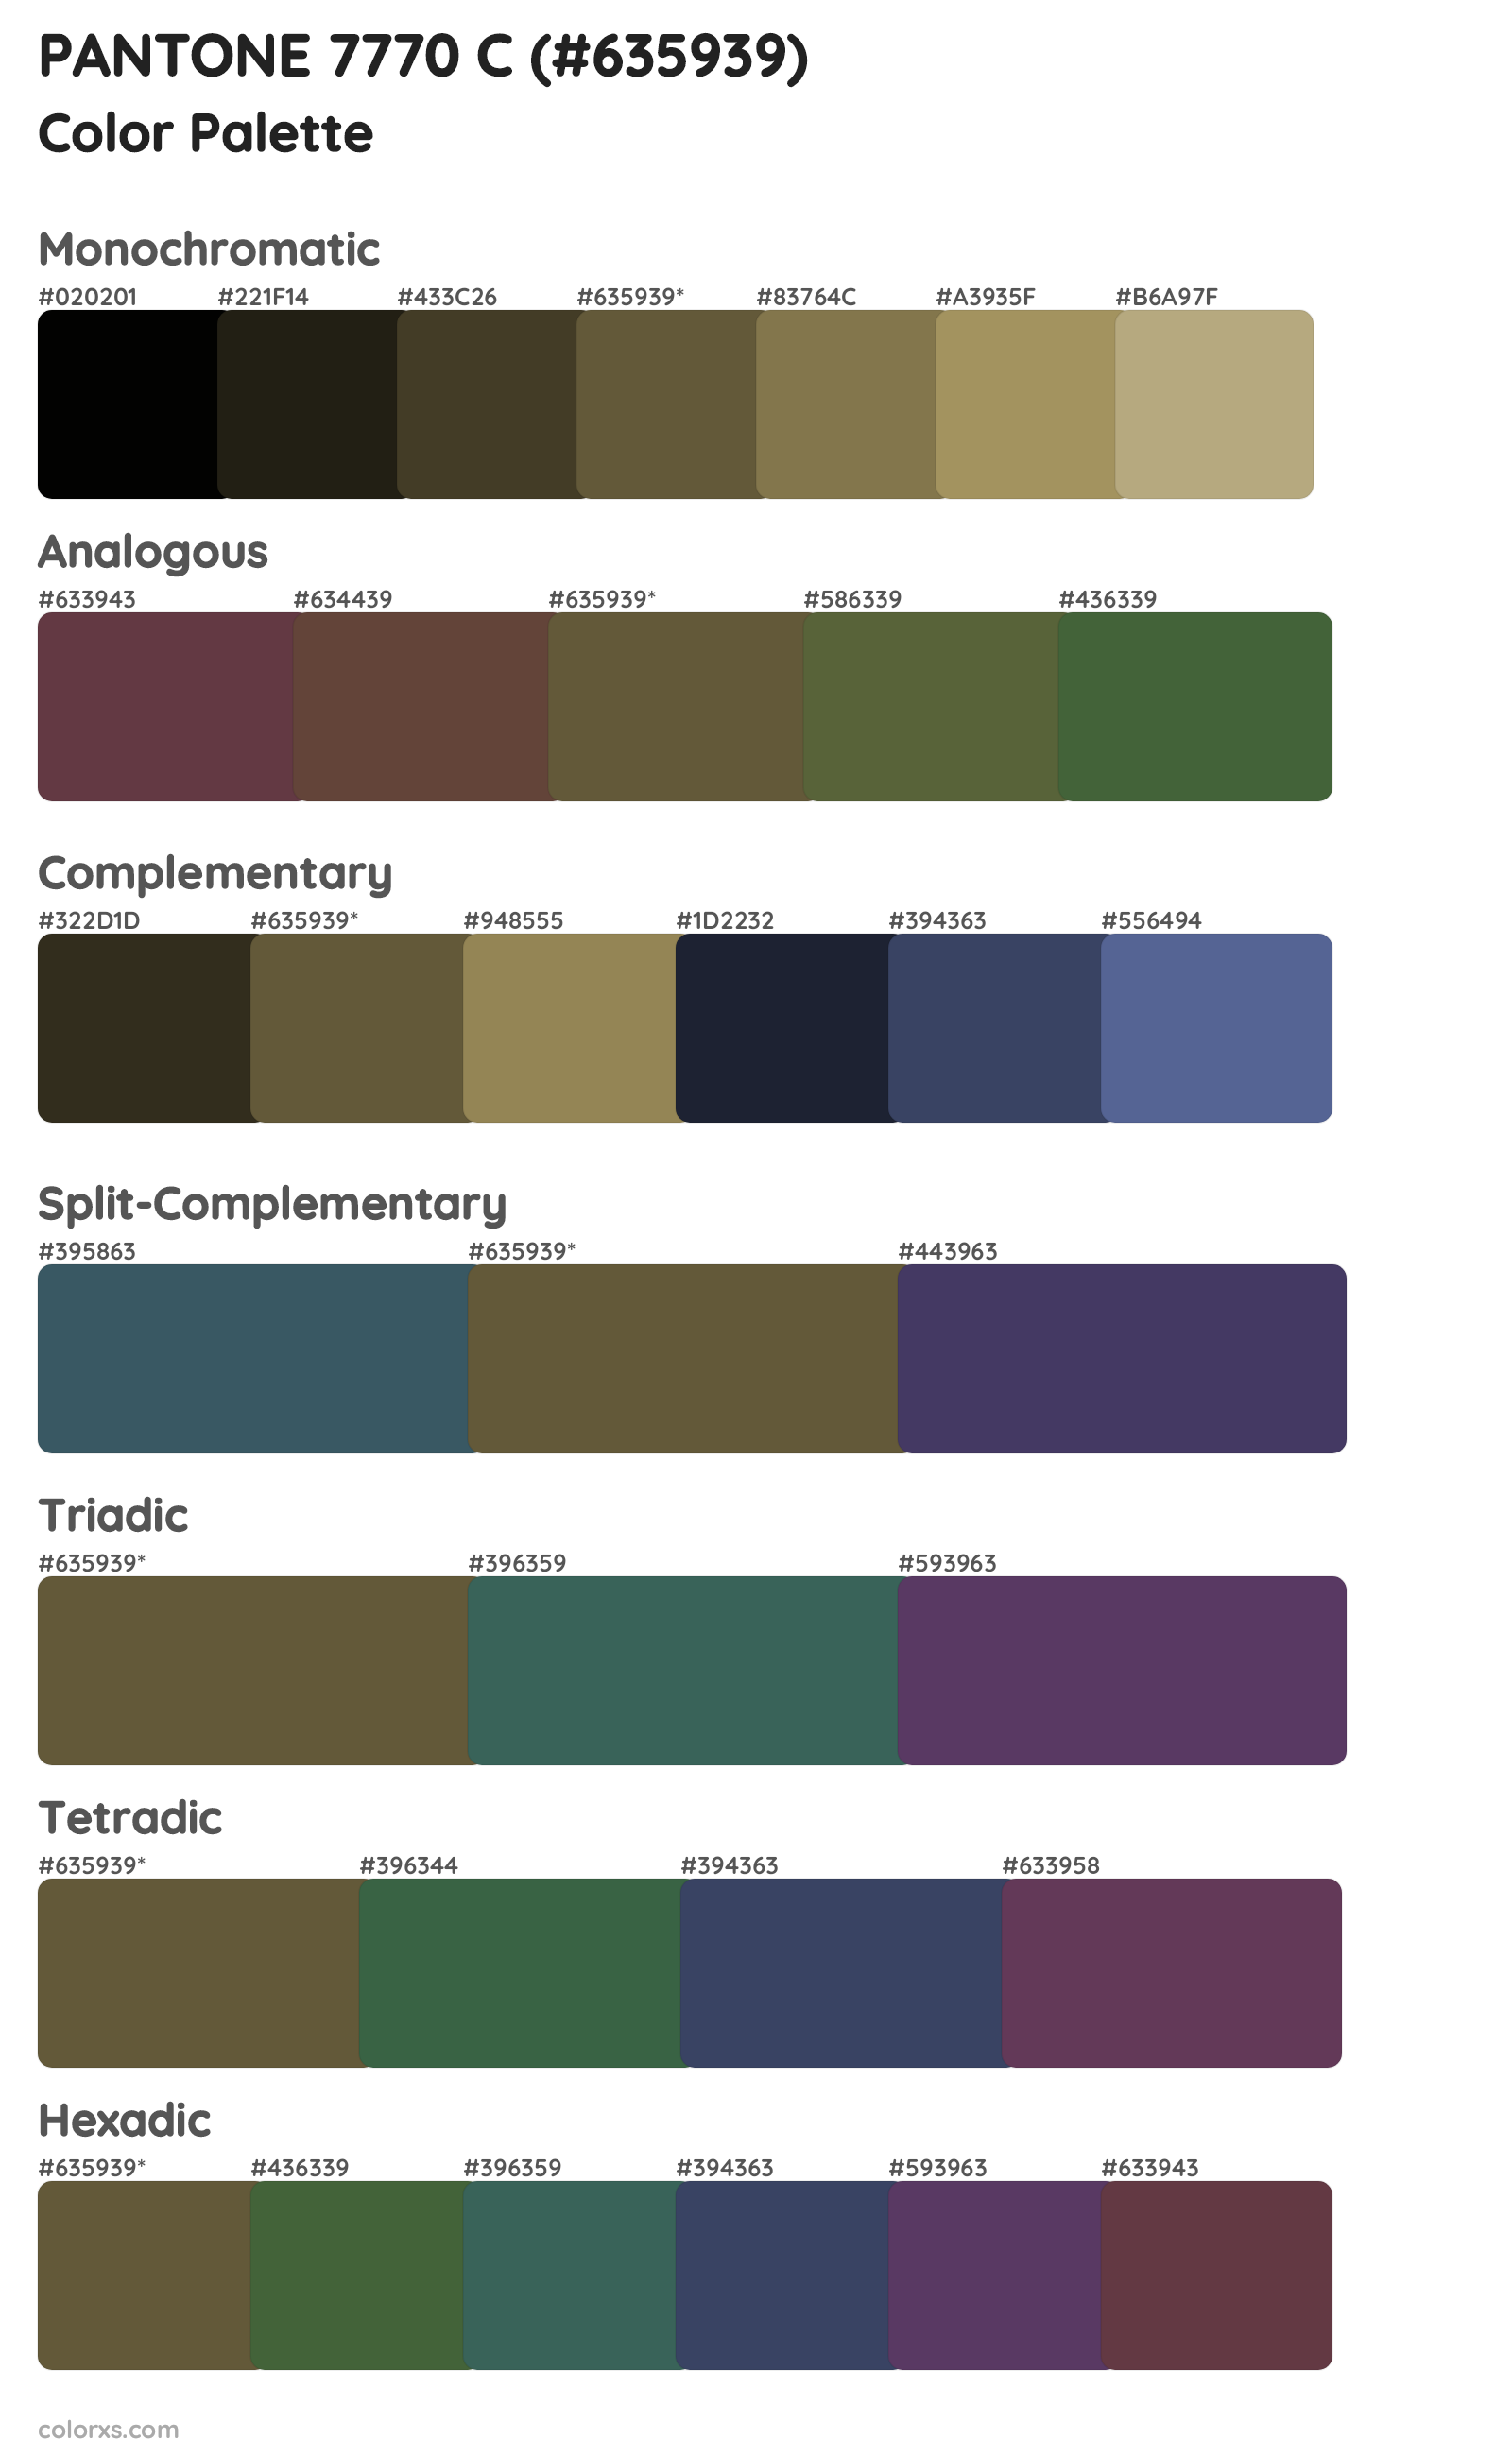 PANTONE 7770 C Color Scheme Palettes